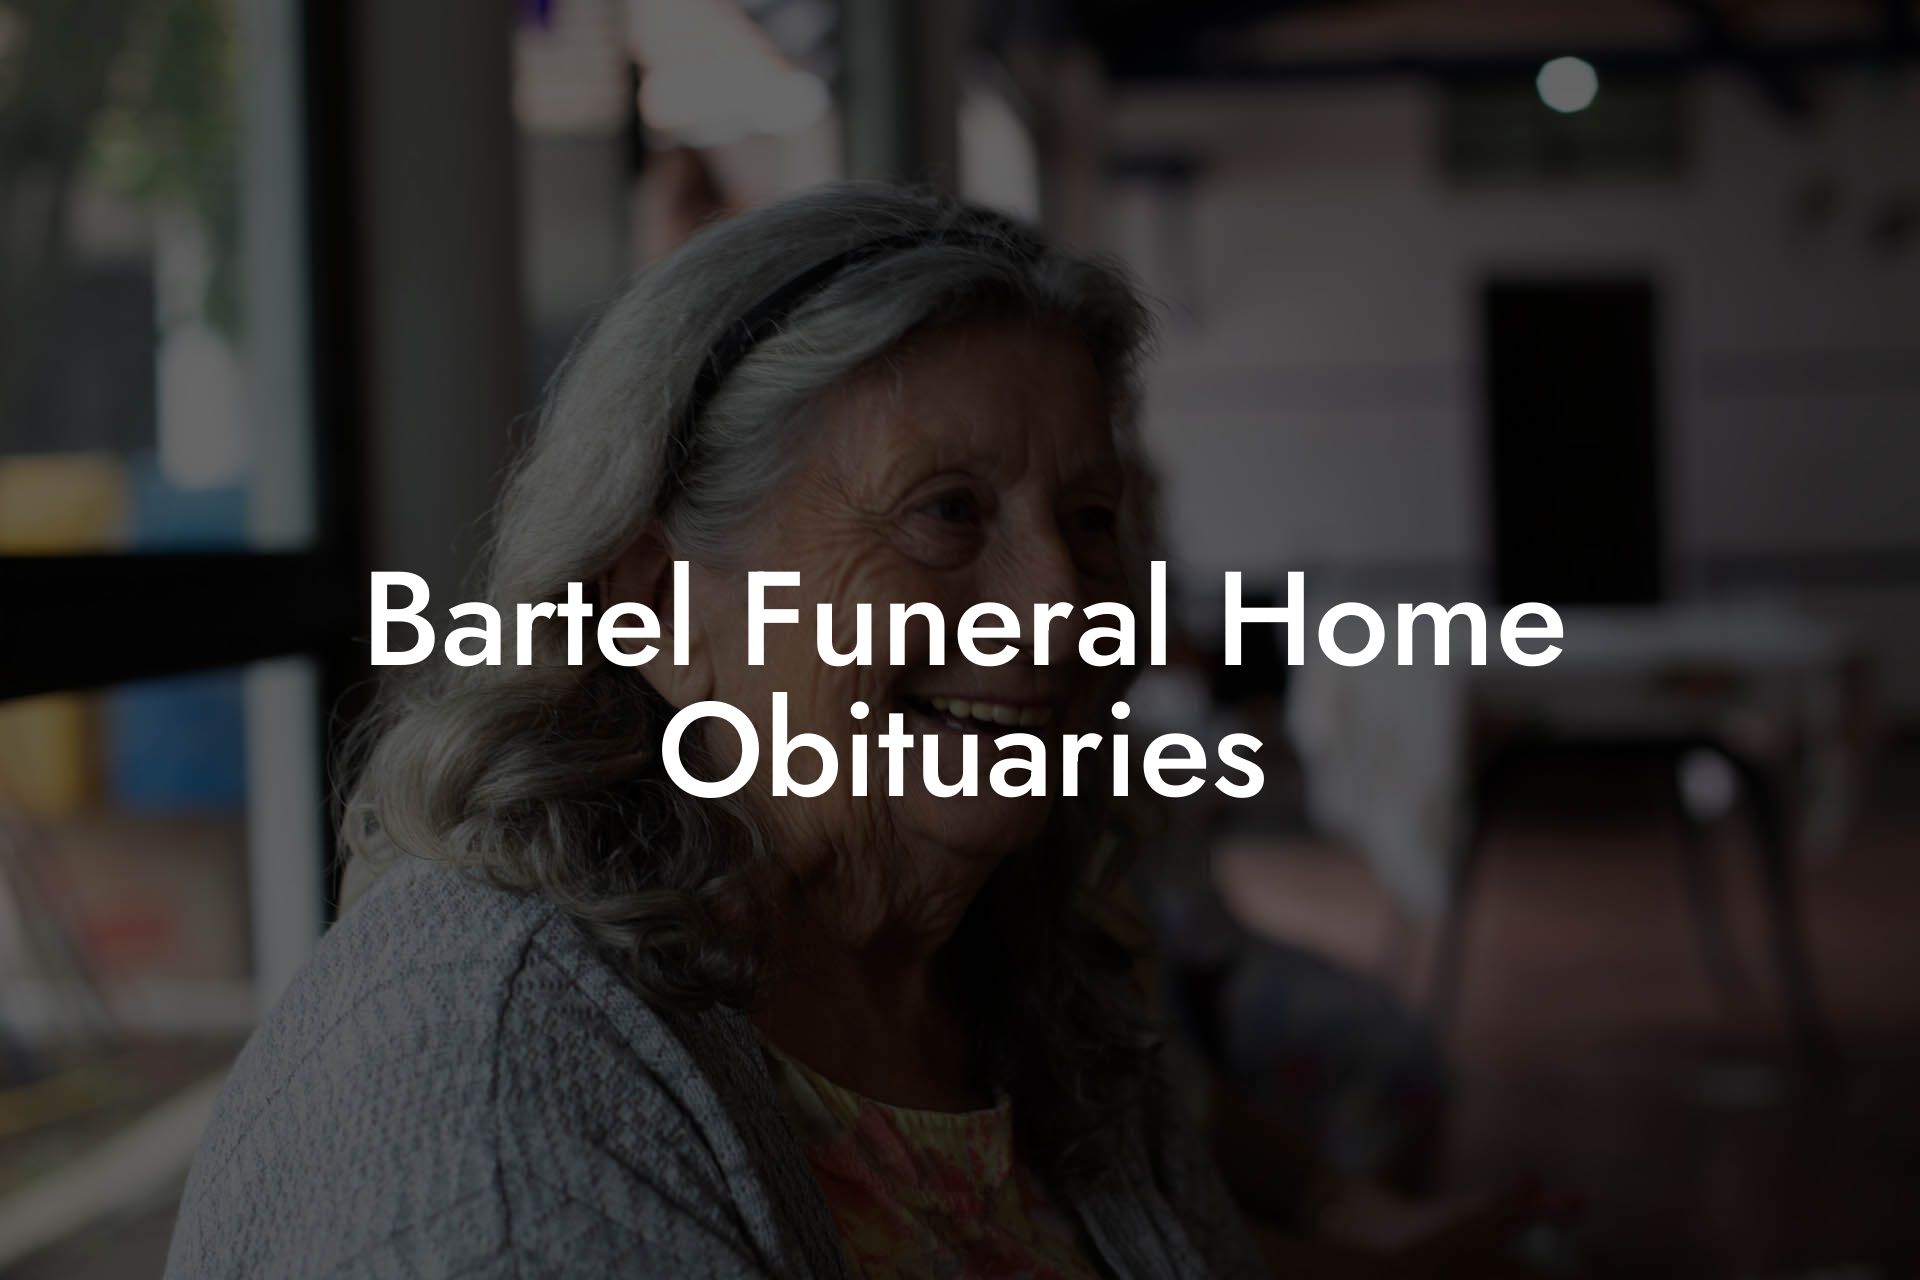 Bartel Funeral Home Obituaries